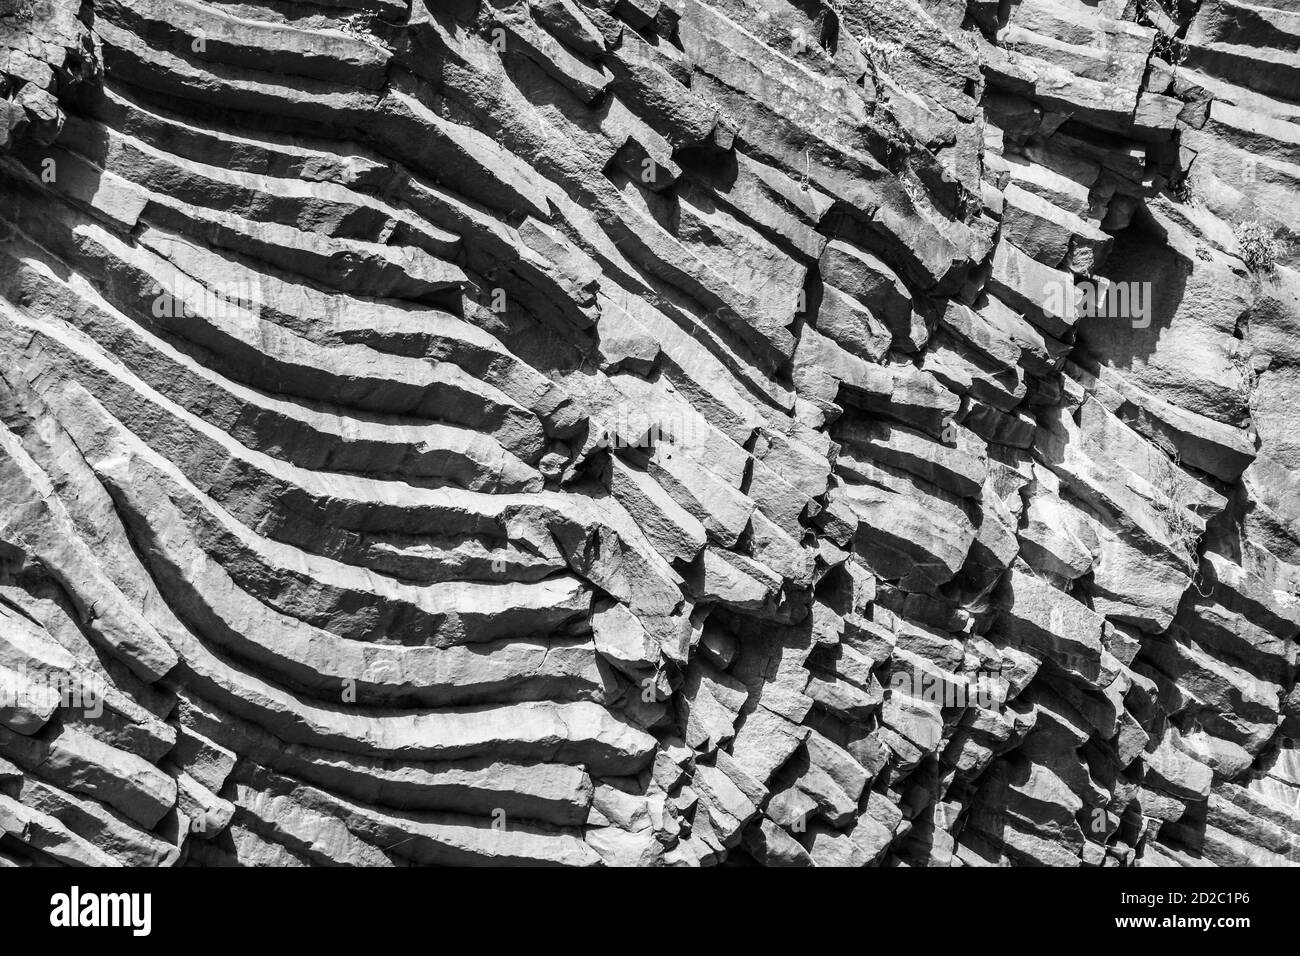 Rocce basaltiche e acque incontaminate delle gole dell'Alcantara in Sicilia, Italia Foto Stock